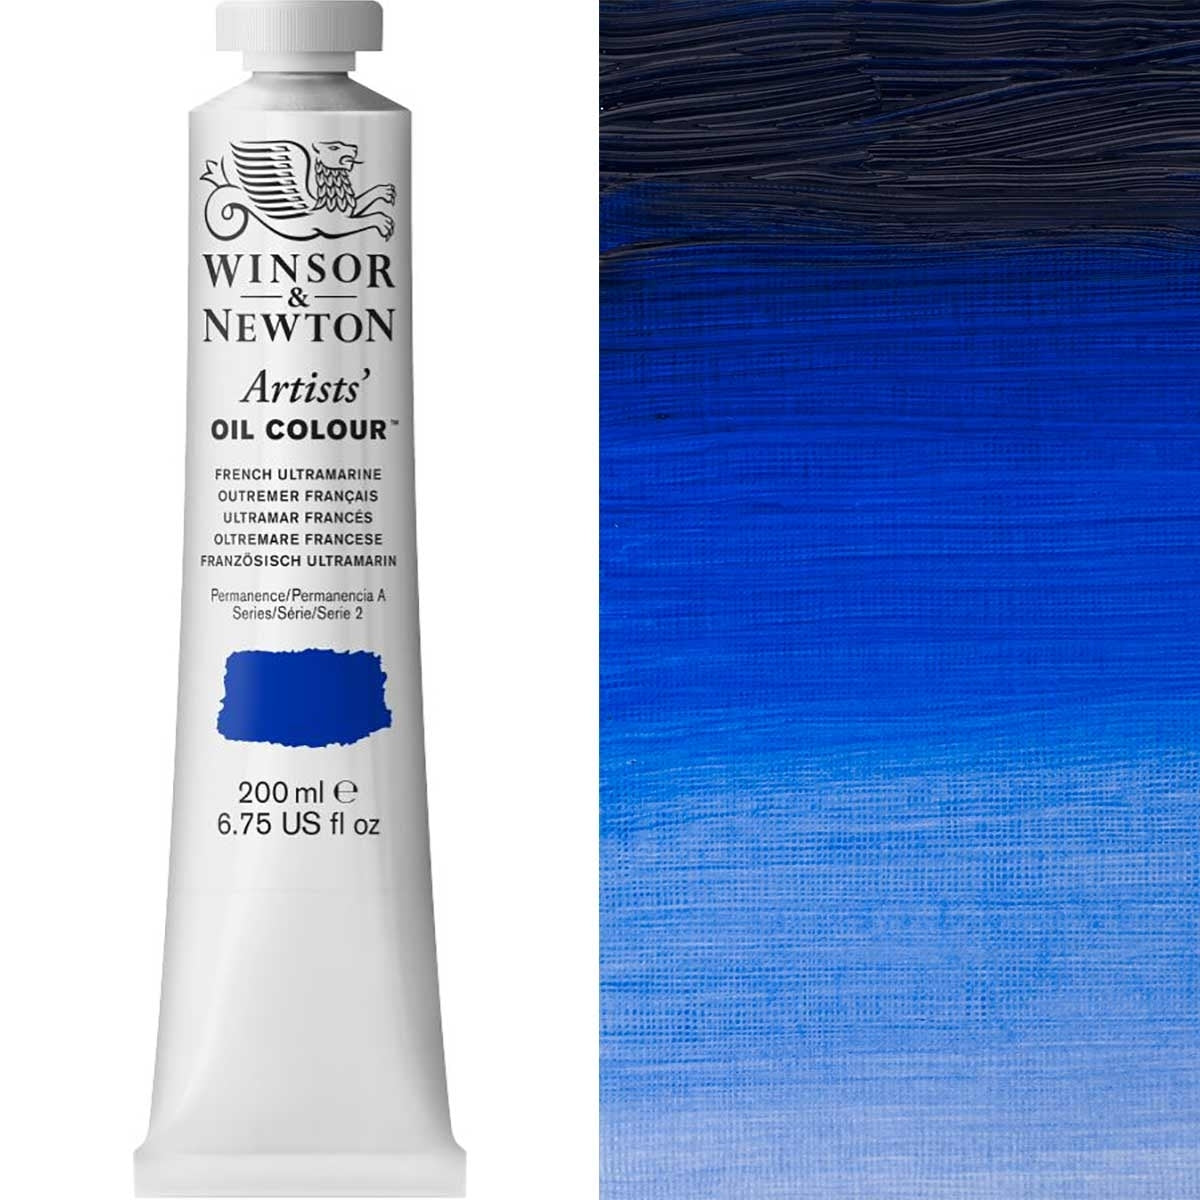 Winsor et Newton - Couleur d'huile des artistes - 200 ml - Ultramarine française